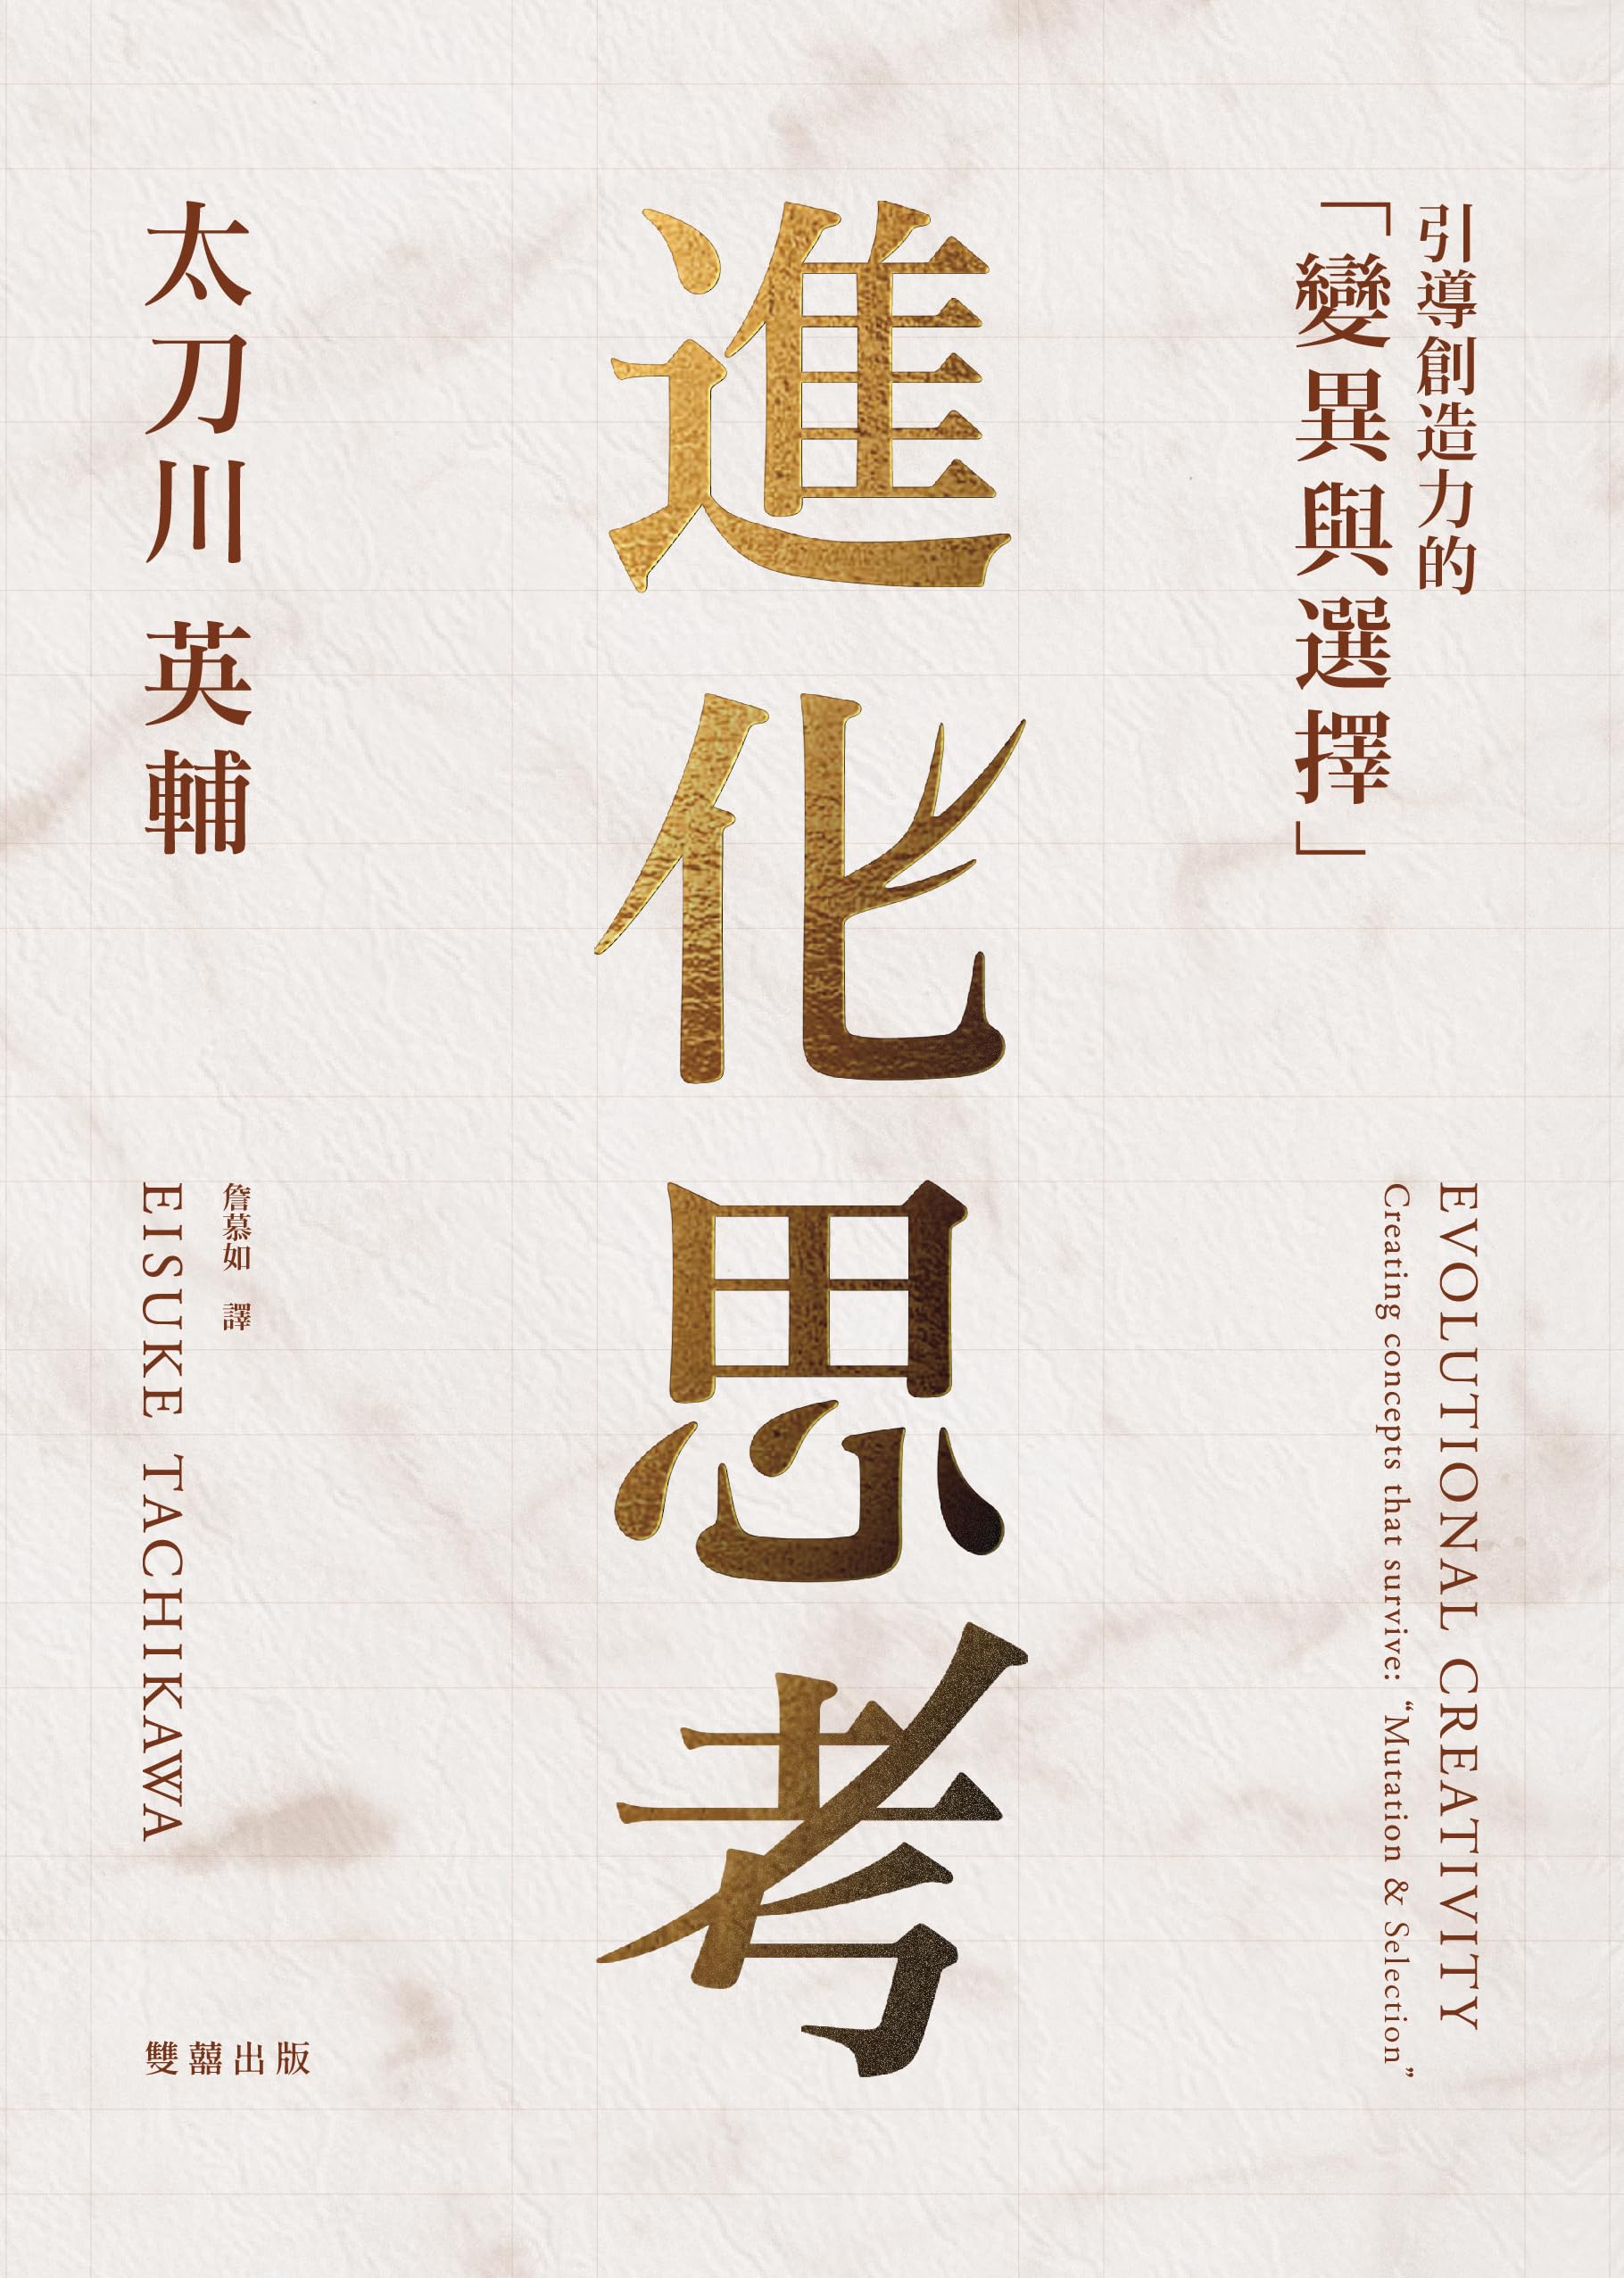 進化思考: 引導創造力的「變異與選擇」 (Traditional Chinese Edition)